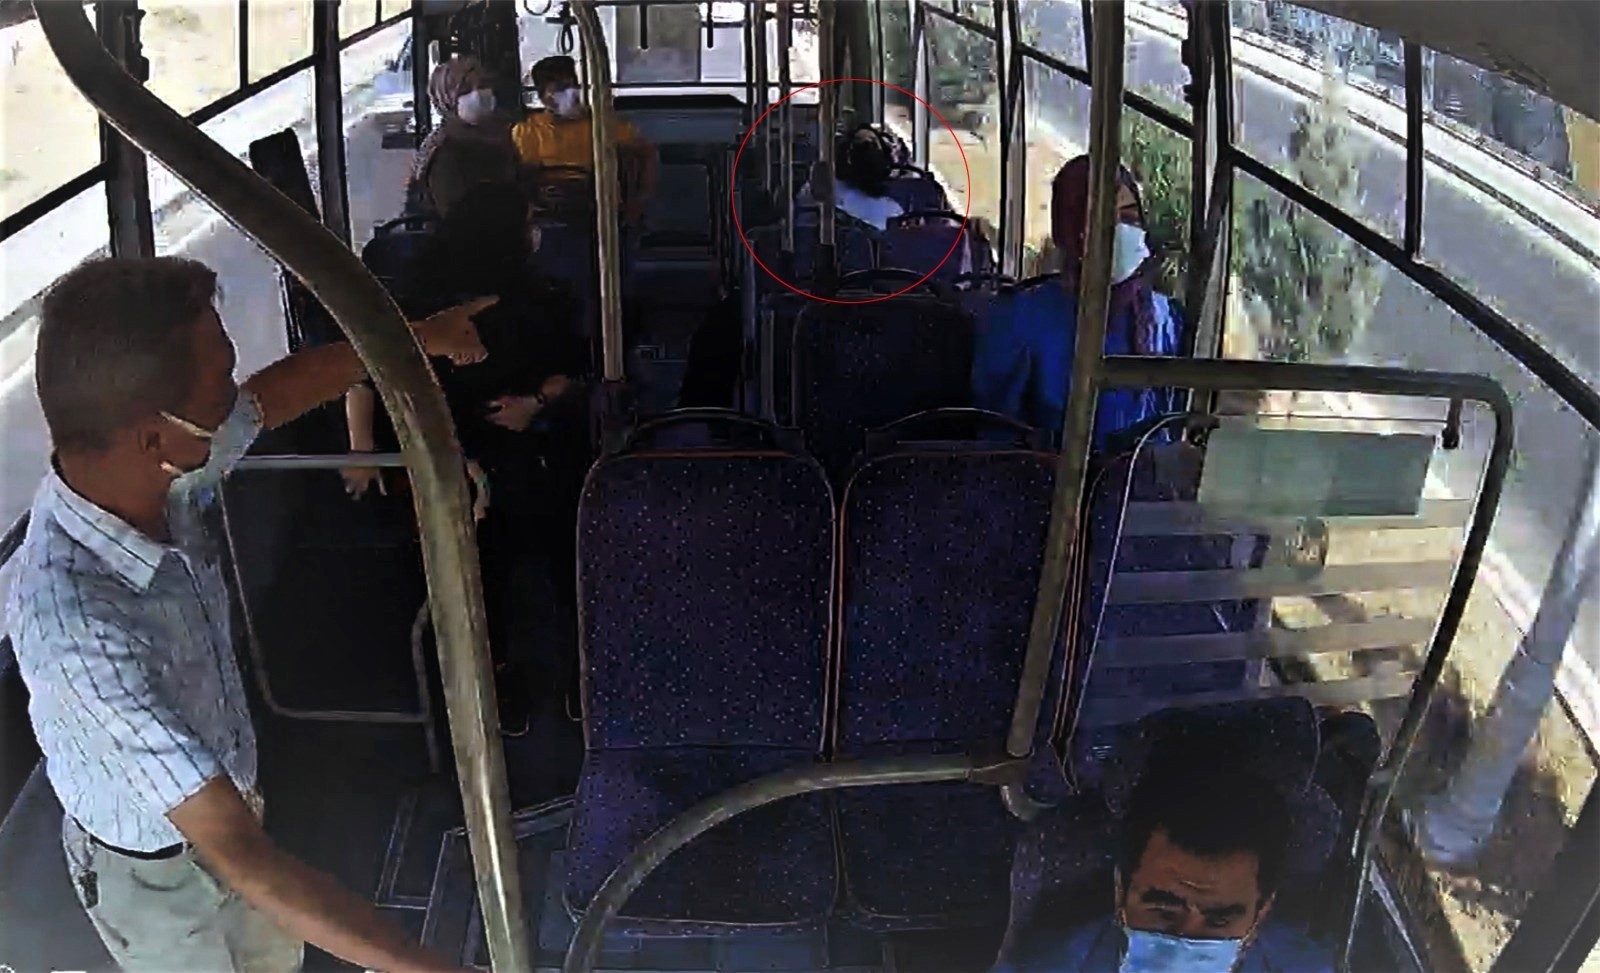 Siirt’te otobüste bayılan yolcuyu şoför hastaneye yetiştirdi